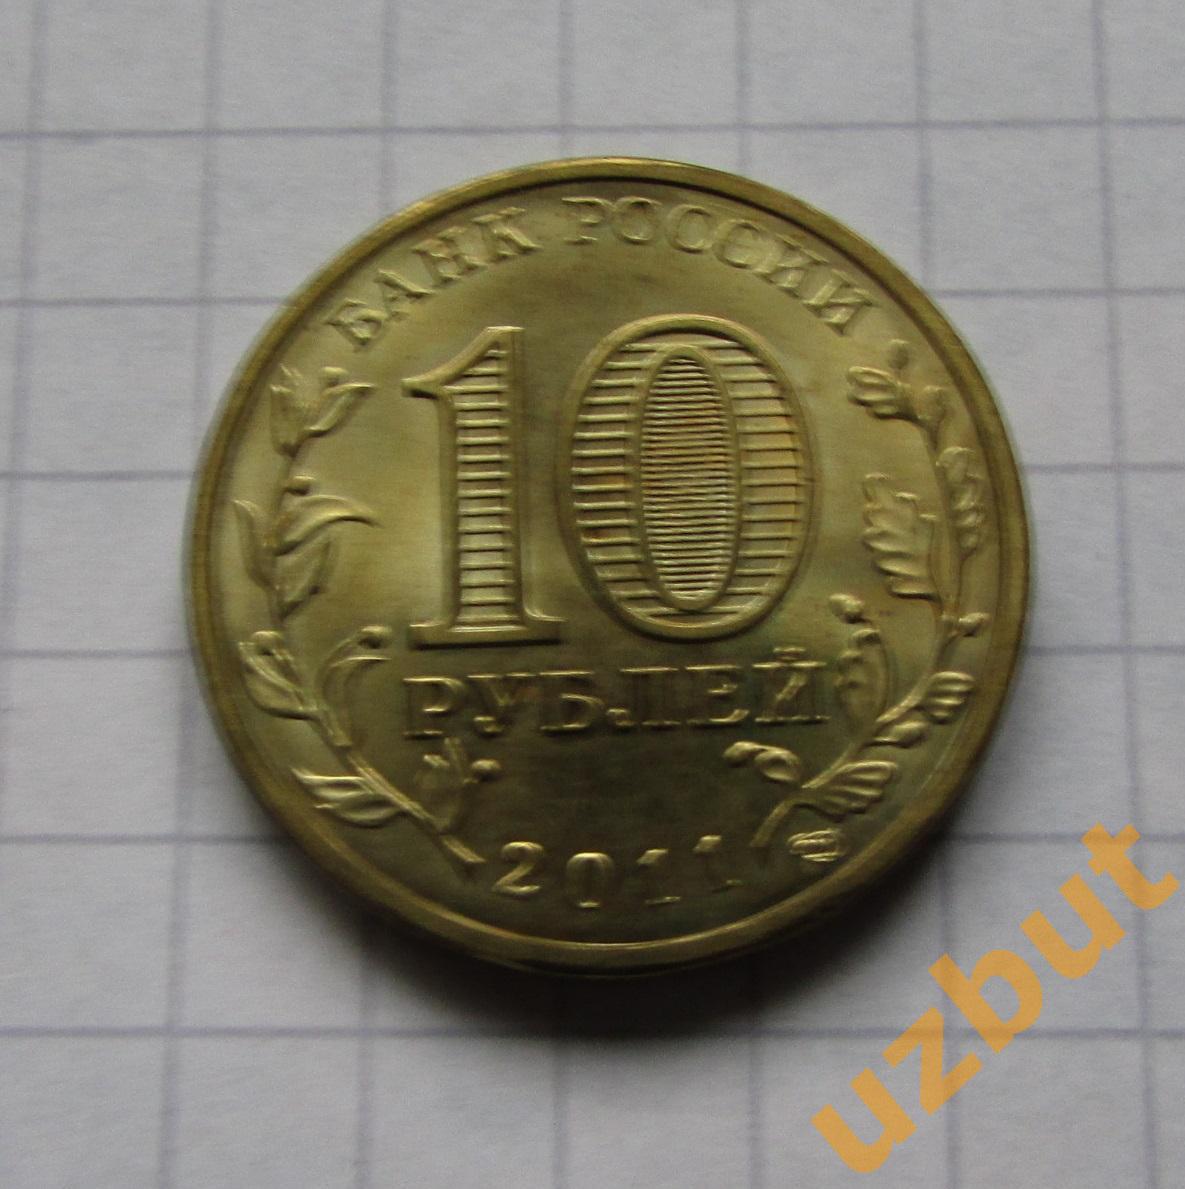 10 рублей РФ 2011 ГВС Малгобек UNC 1